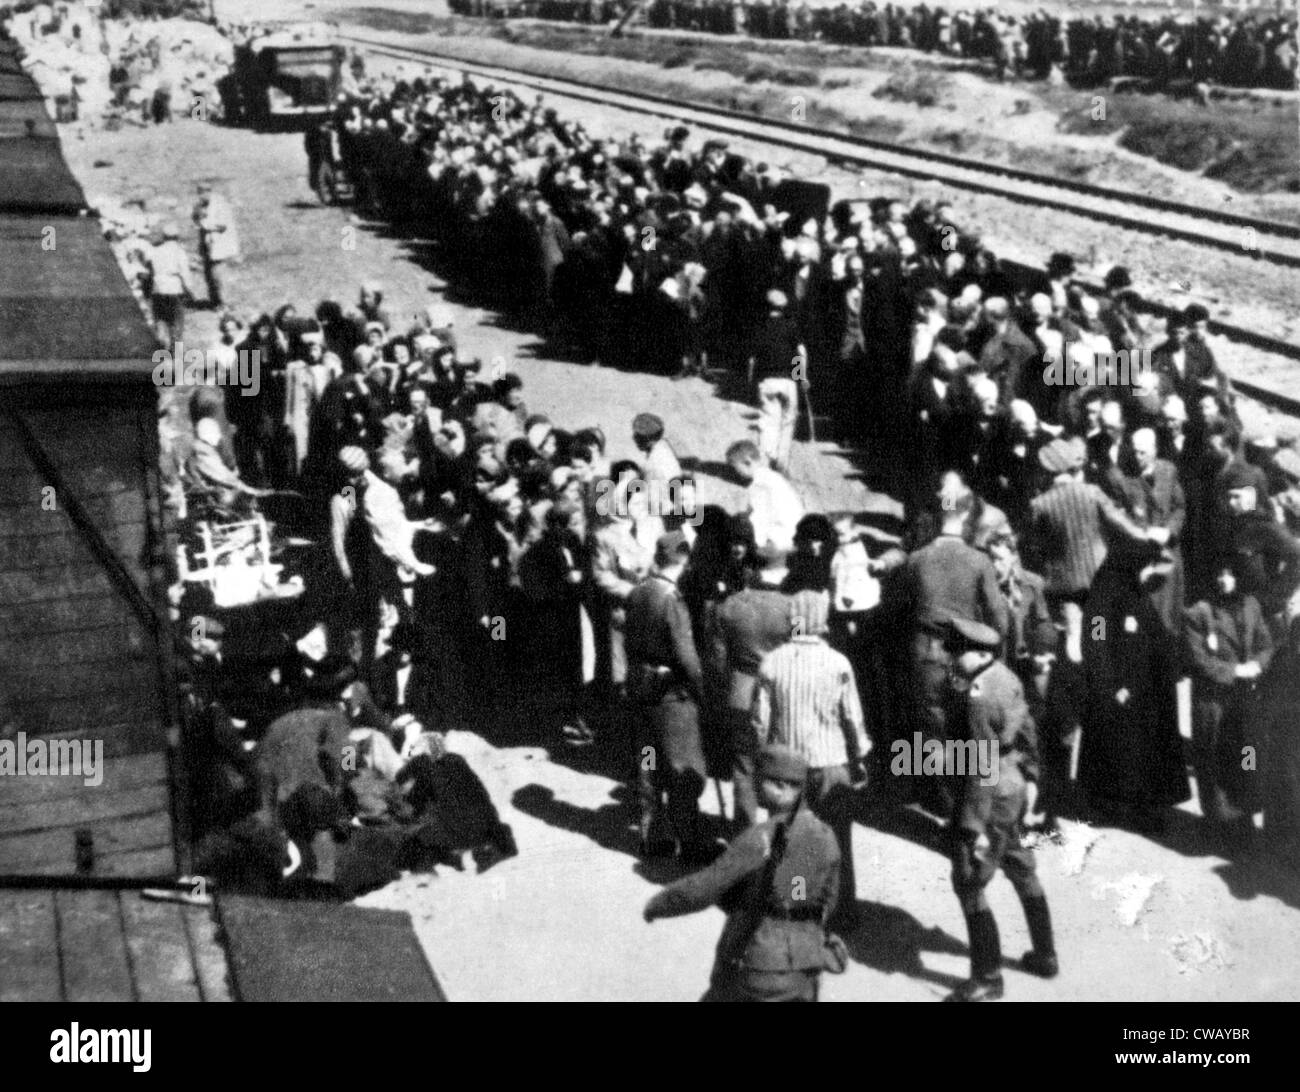 Selezione e separazione dei prigionieri al Campo di Concentramento di Auschwitz-Birkenau stazione ferroviaria in Polonia, ca. 1944 Foto Stock